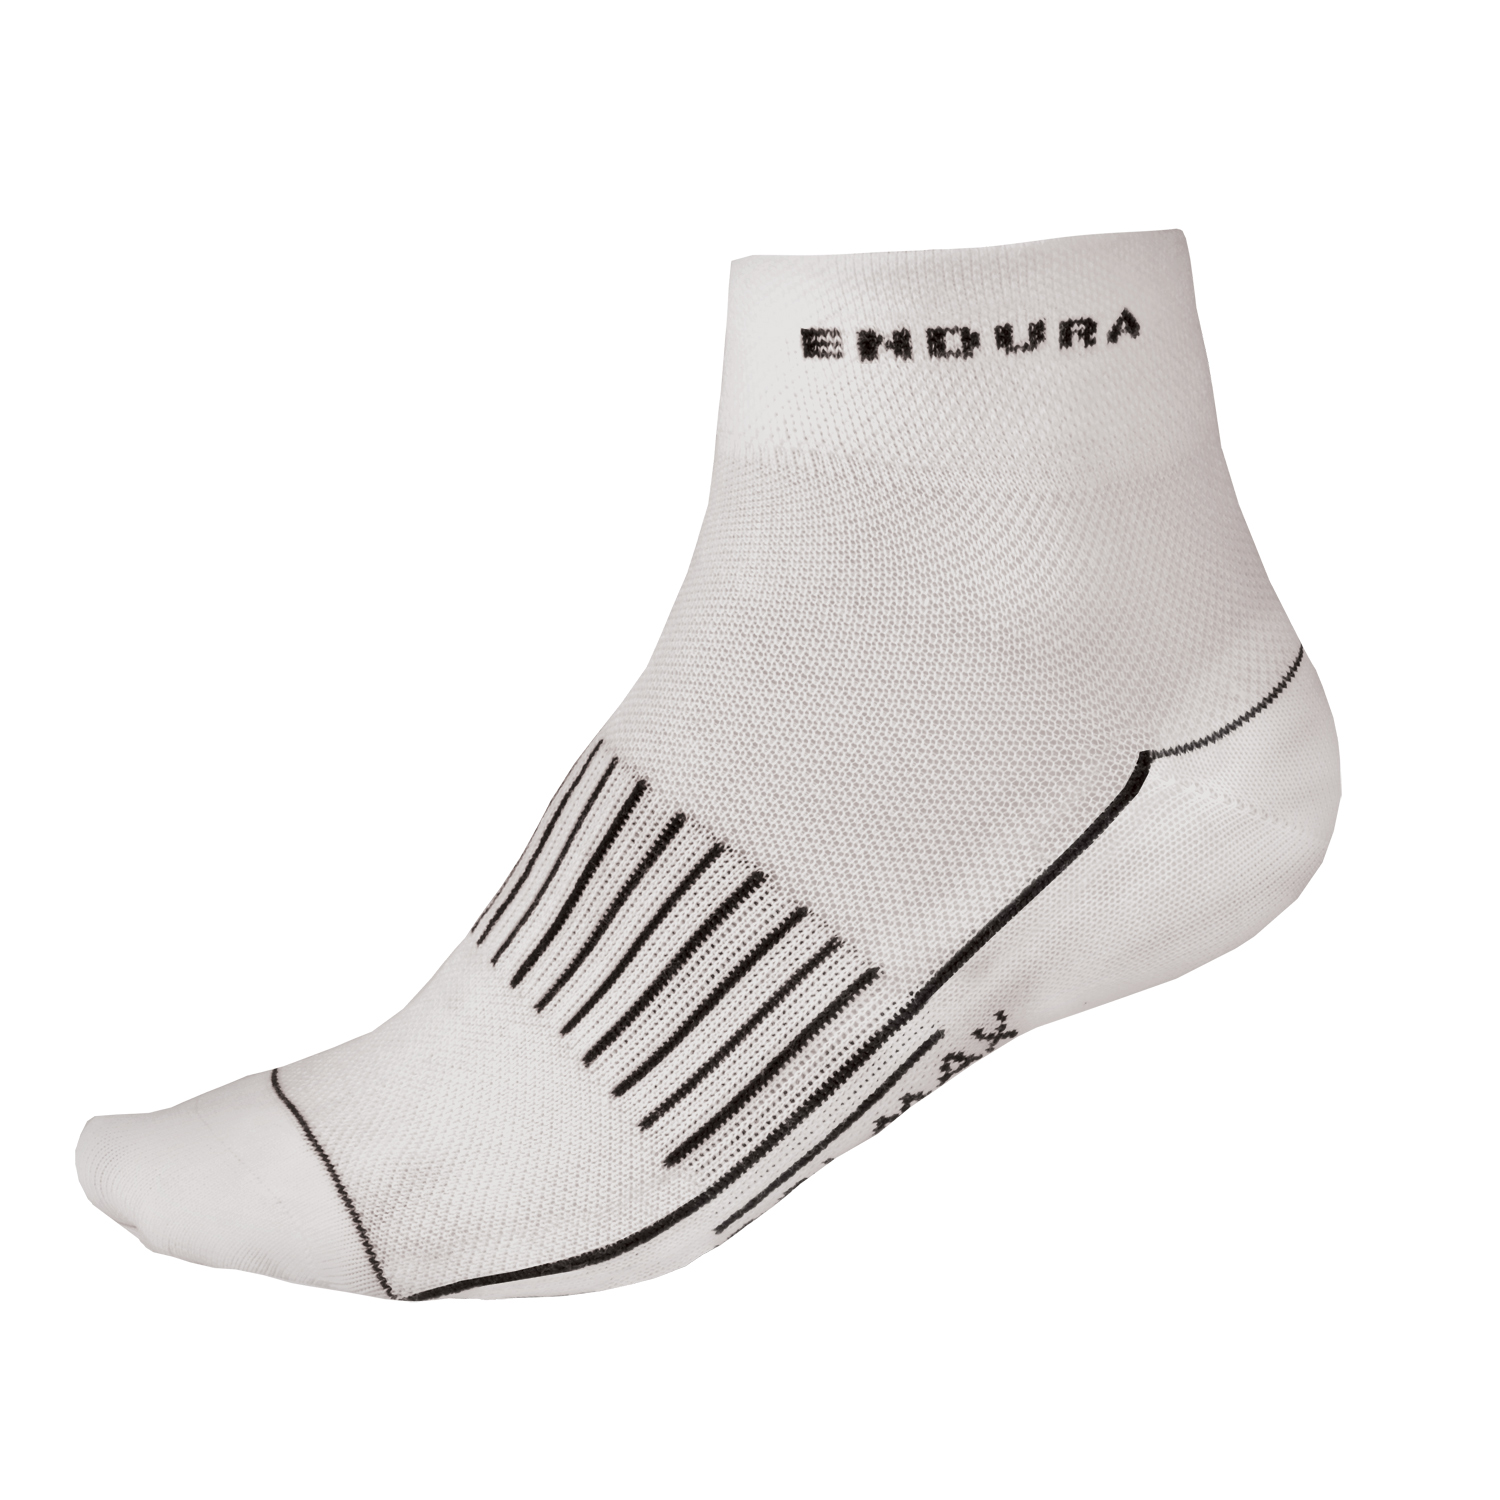 endura coolmax socks